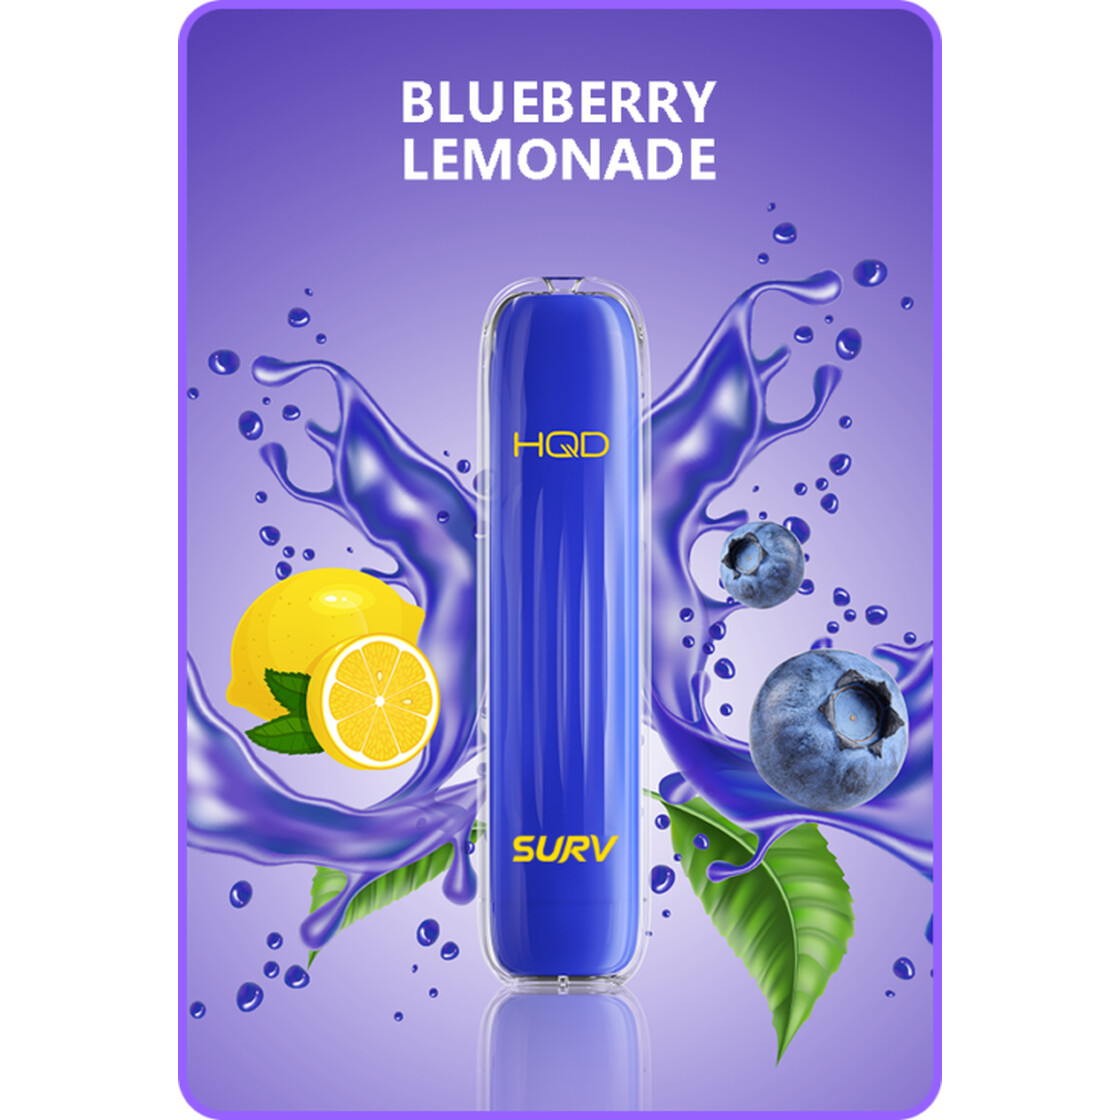 HQD Surv 600 Züge Einweg Blueberry Lemonade